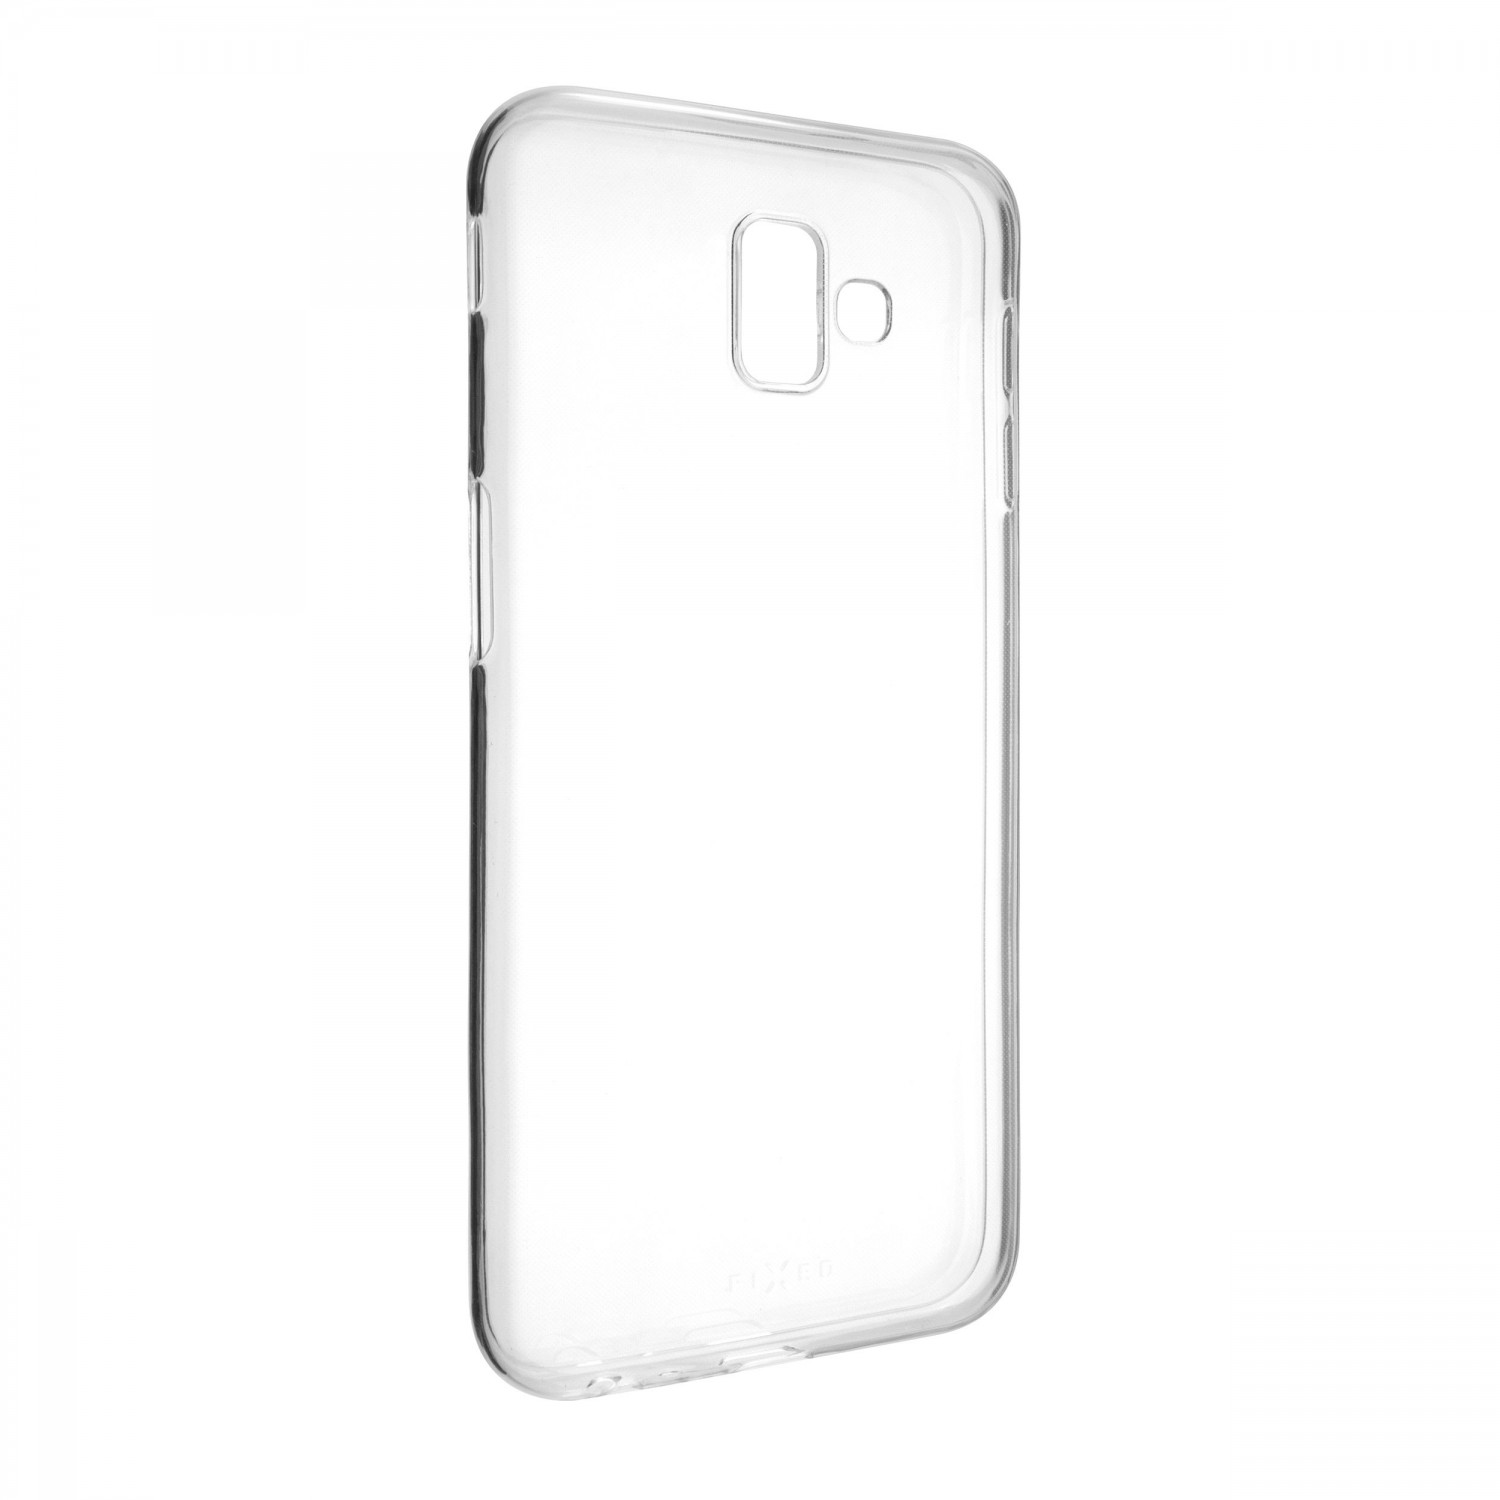 Ultratenké silikonové pouzdro FIXED Skin pro Samsung Galaxy J6+, transparentní